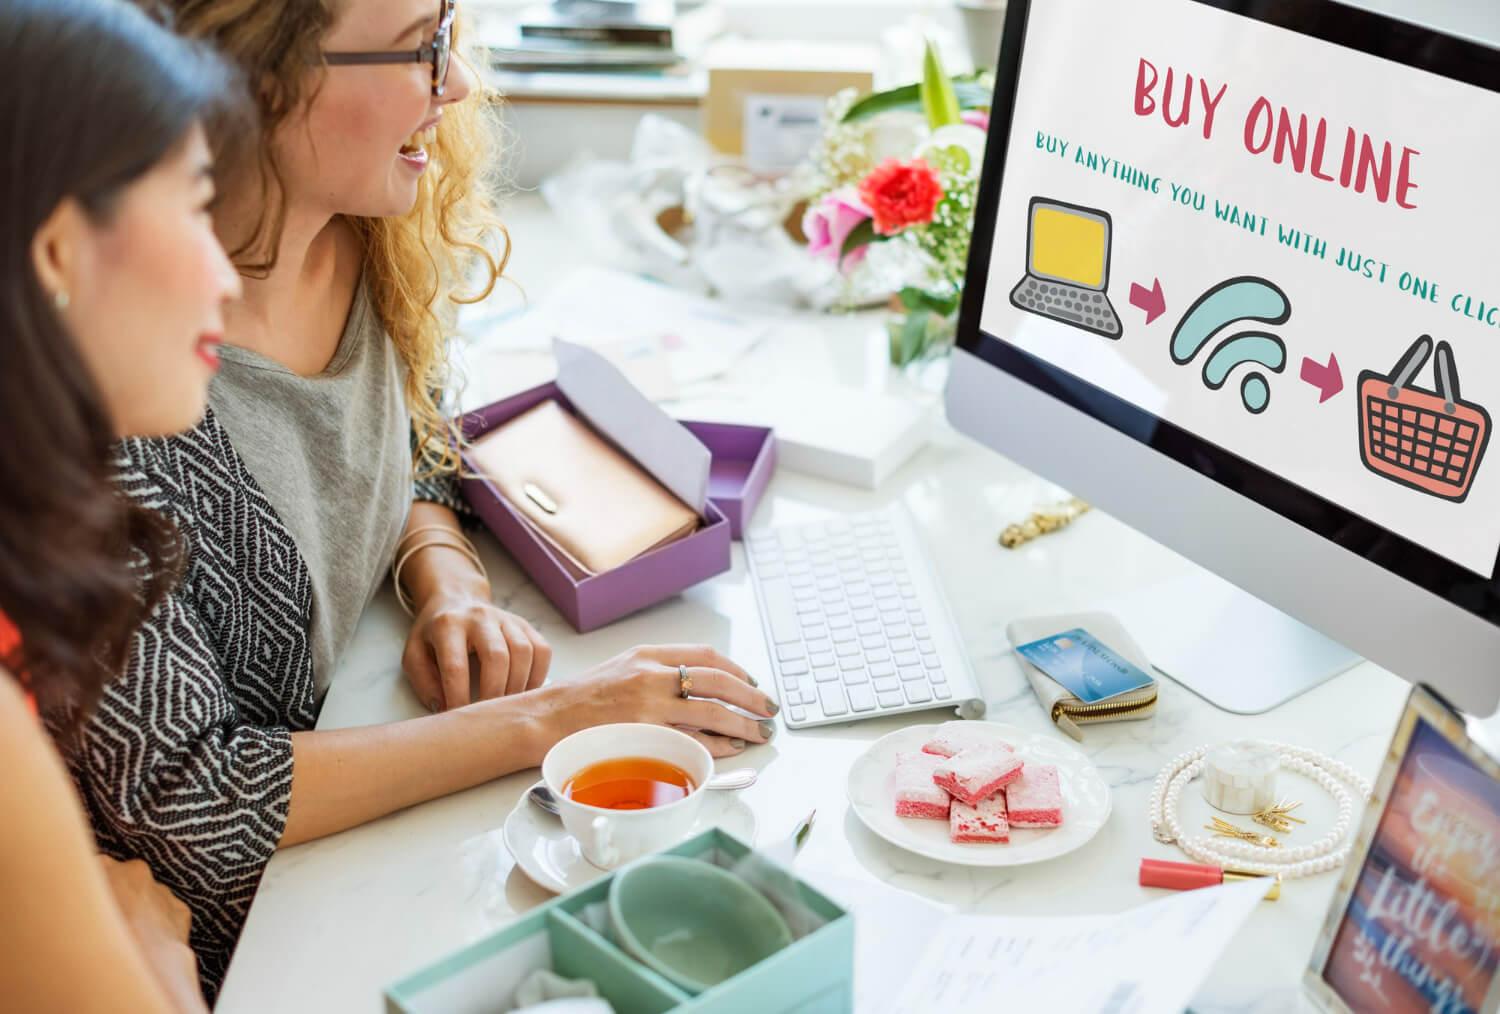 Twee dames zitten voor een computerscherm met de tekst 'Buy Online" met het ultieme stappenplan voor een webshop